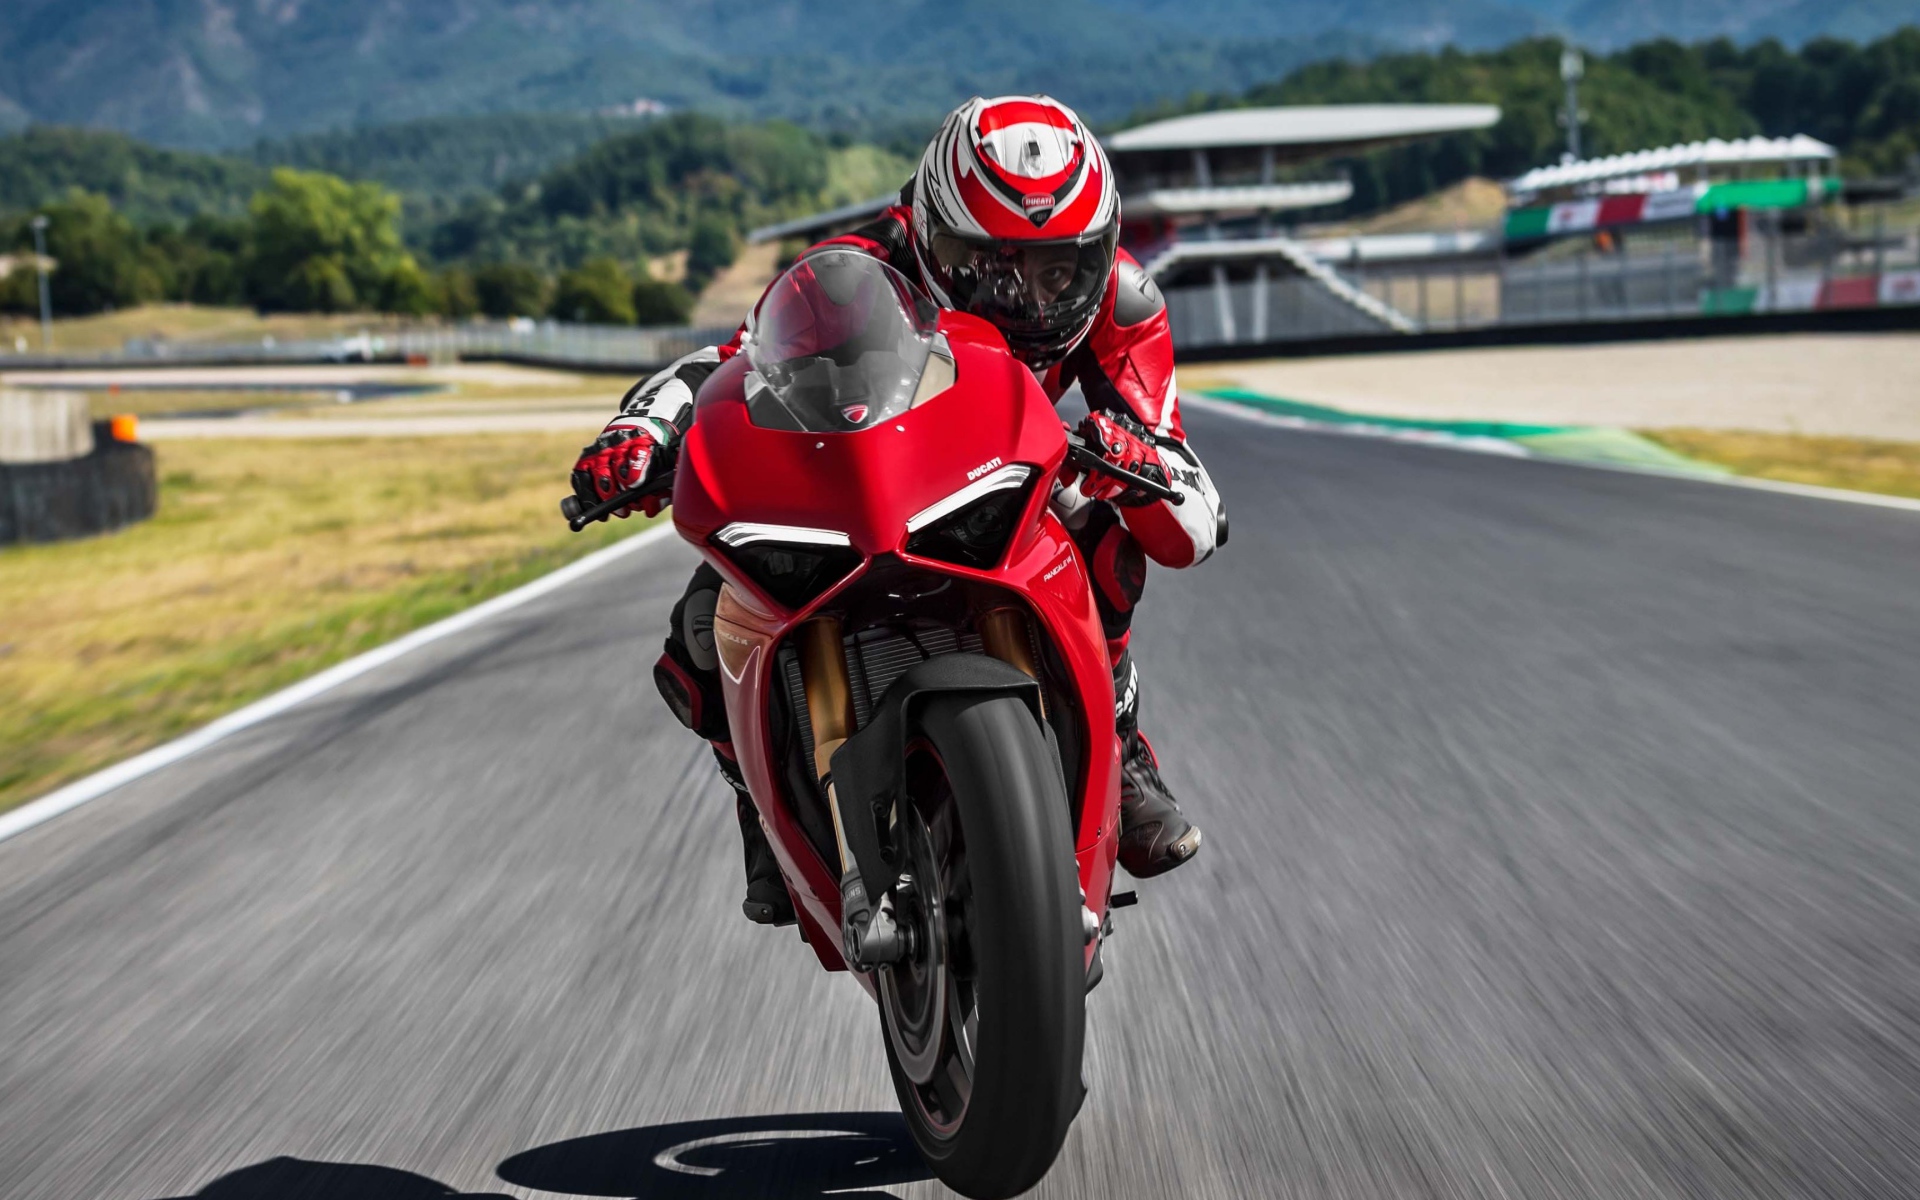 Красный мотоцикл  Ducati Panigale V4 S, 2018 на трассе с мотогонщиком